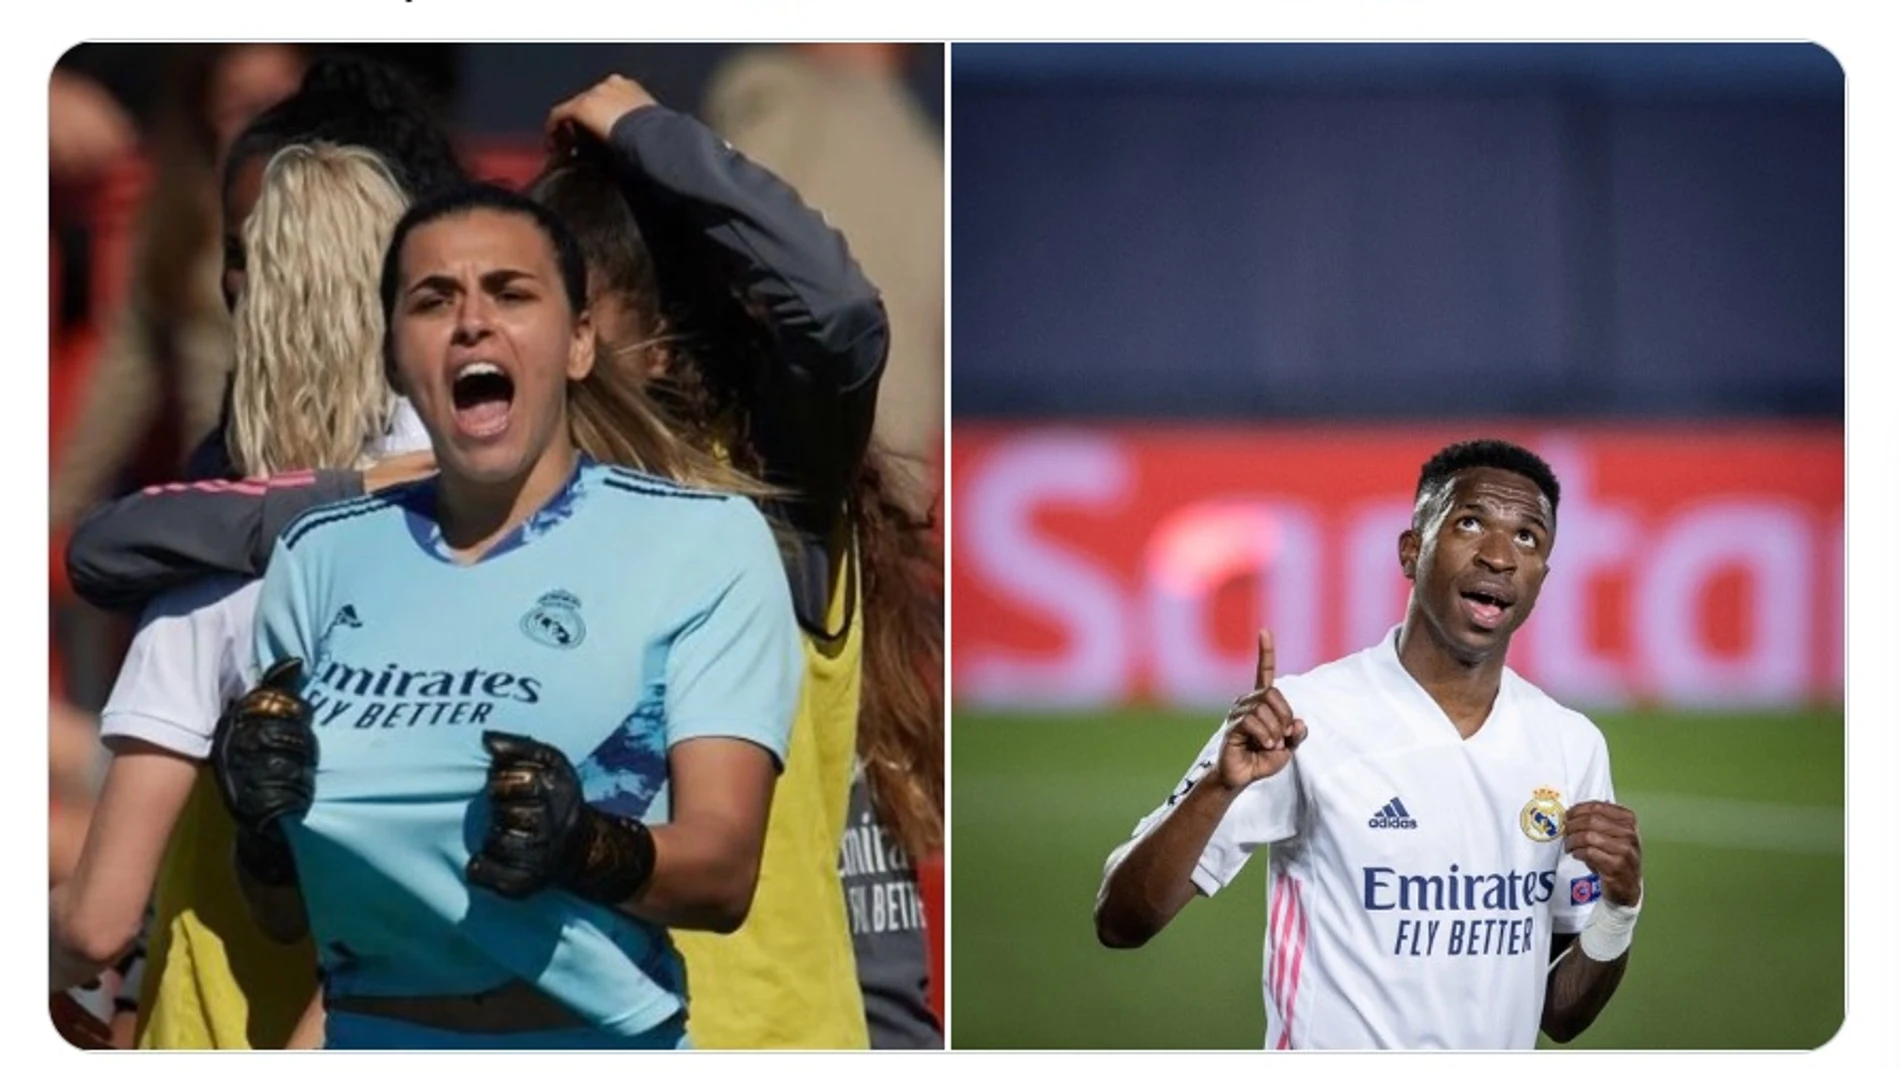 El mundo del fútbol apoya a Misa Rodríguez tras sufrir comentarios machistas